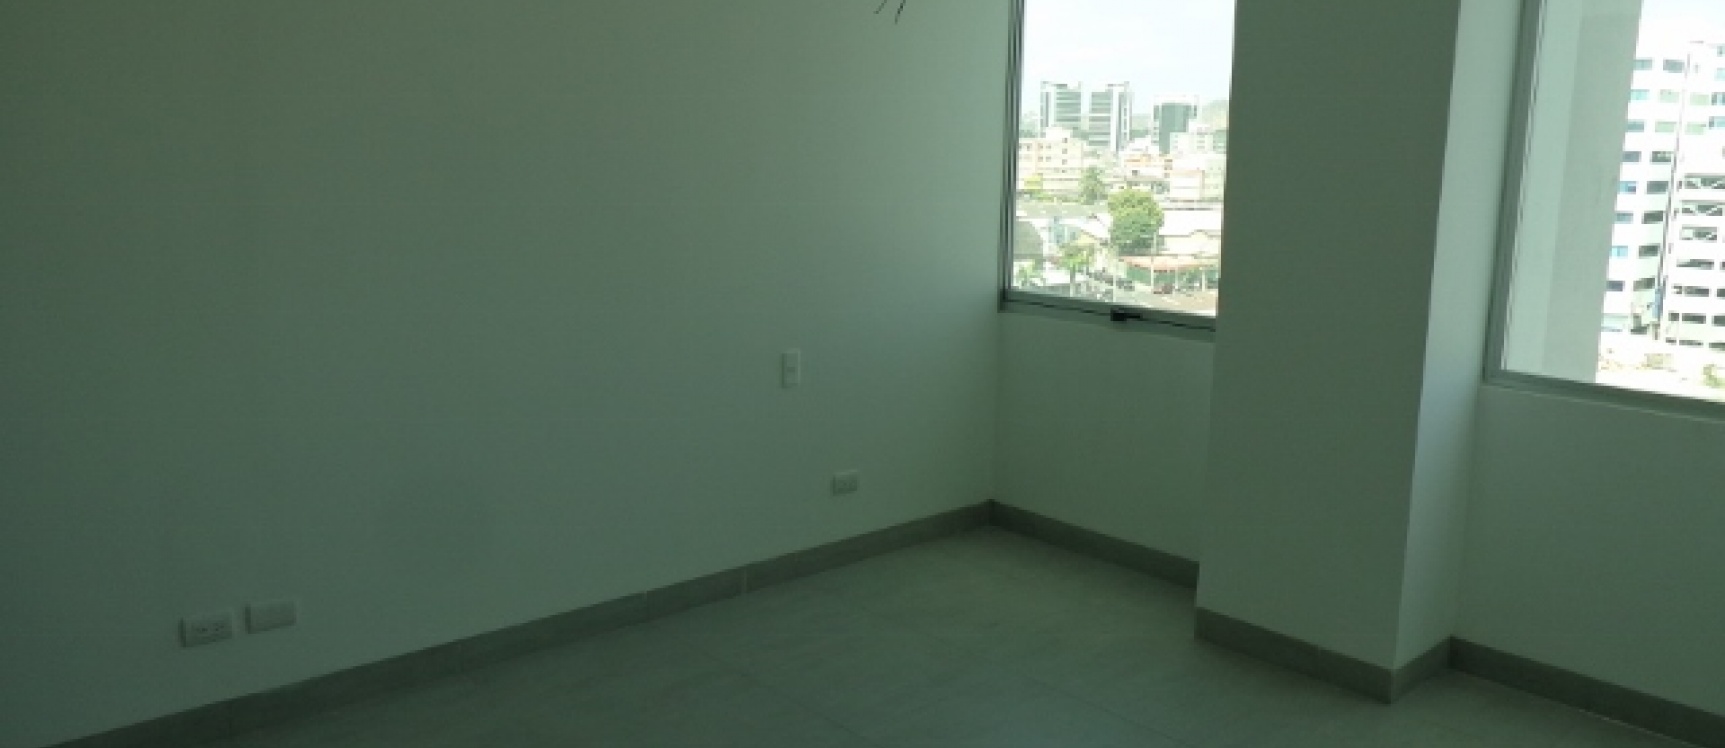 GeoBienes - Departamento en Venta Edificio QUO de estreno - Plusvalia Guayaquil Casas de venta y alquiler Inmobiliaria Ecuador